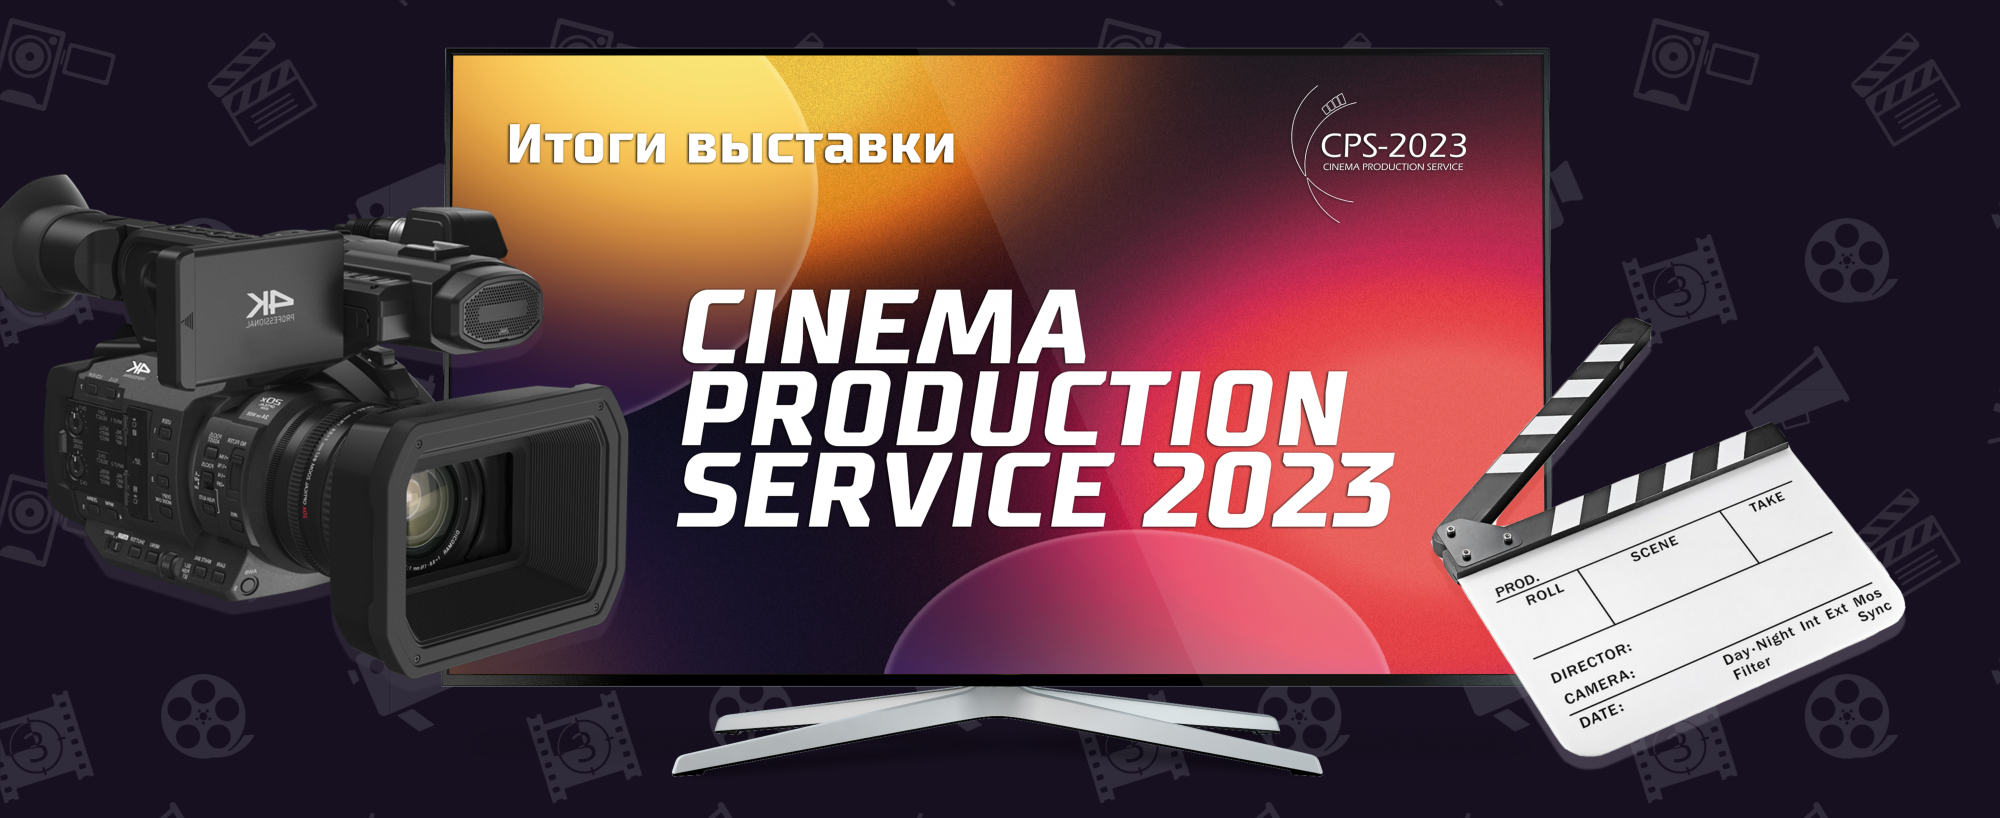 Итоги выставки Cinema Production Service 2023!